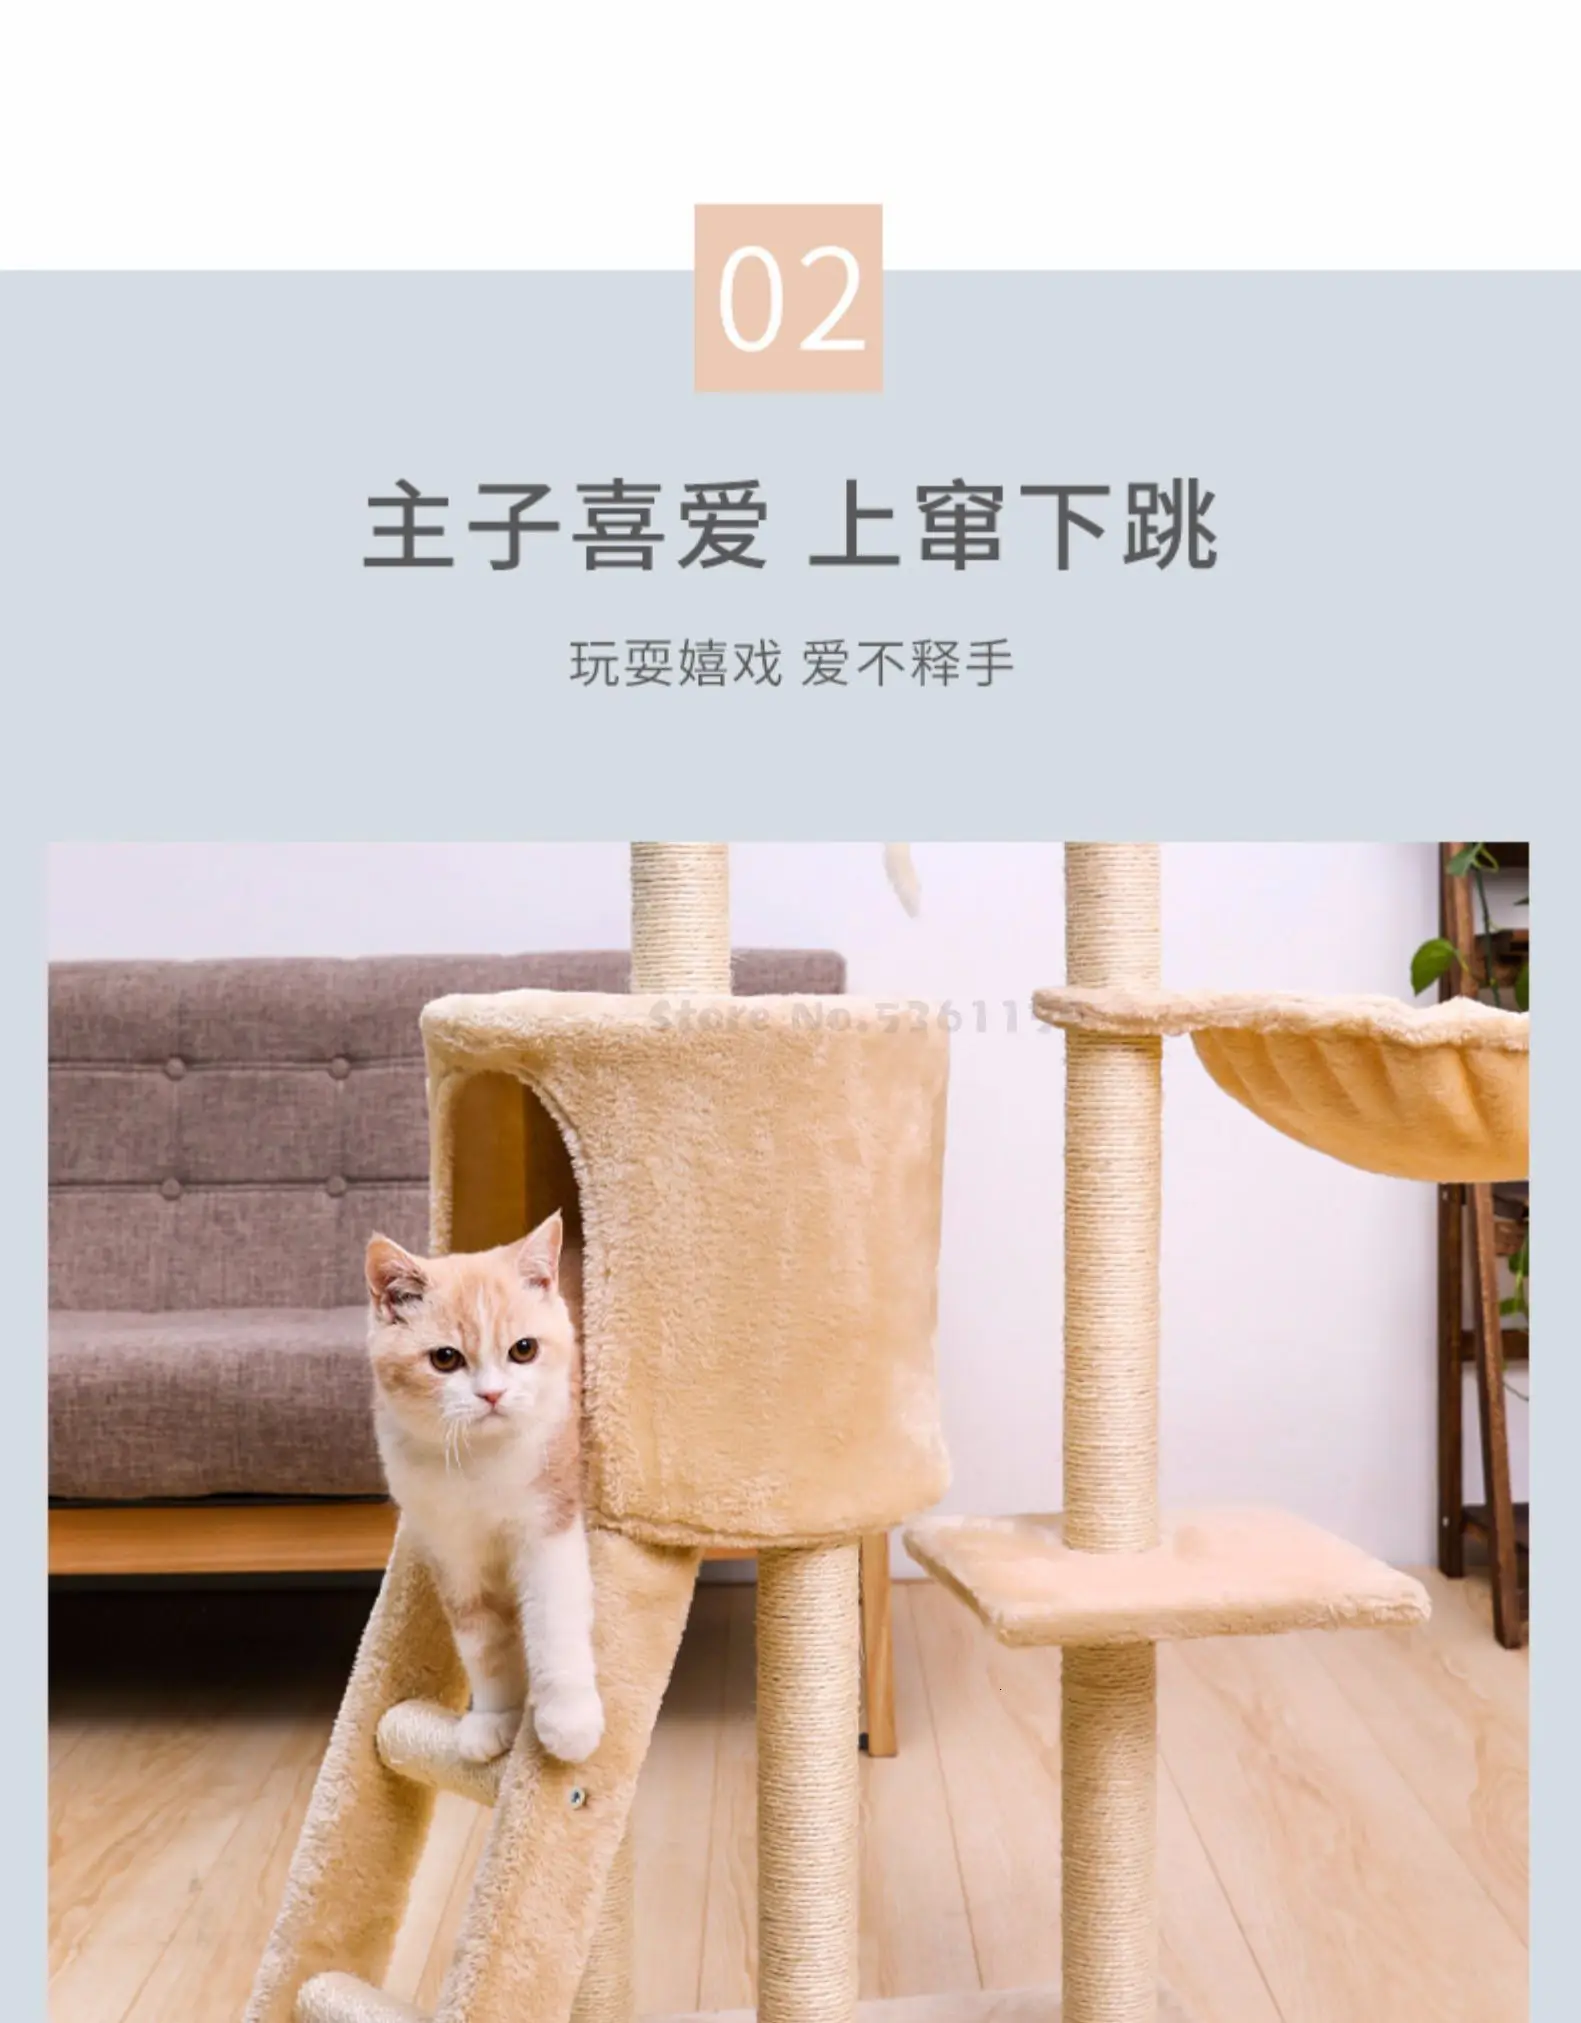 Домик для кошек Tongtianzhu с отверстием для кошачьего лазания, встроенное кошачье дерево, Когтеточка для кошек, игрушка для кошек